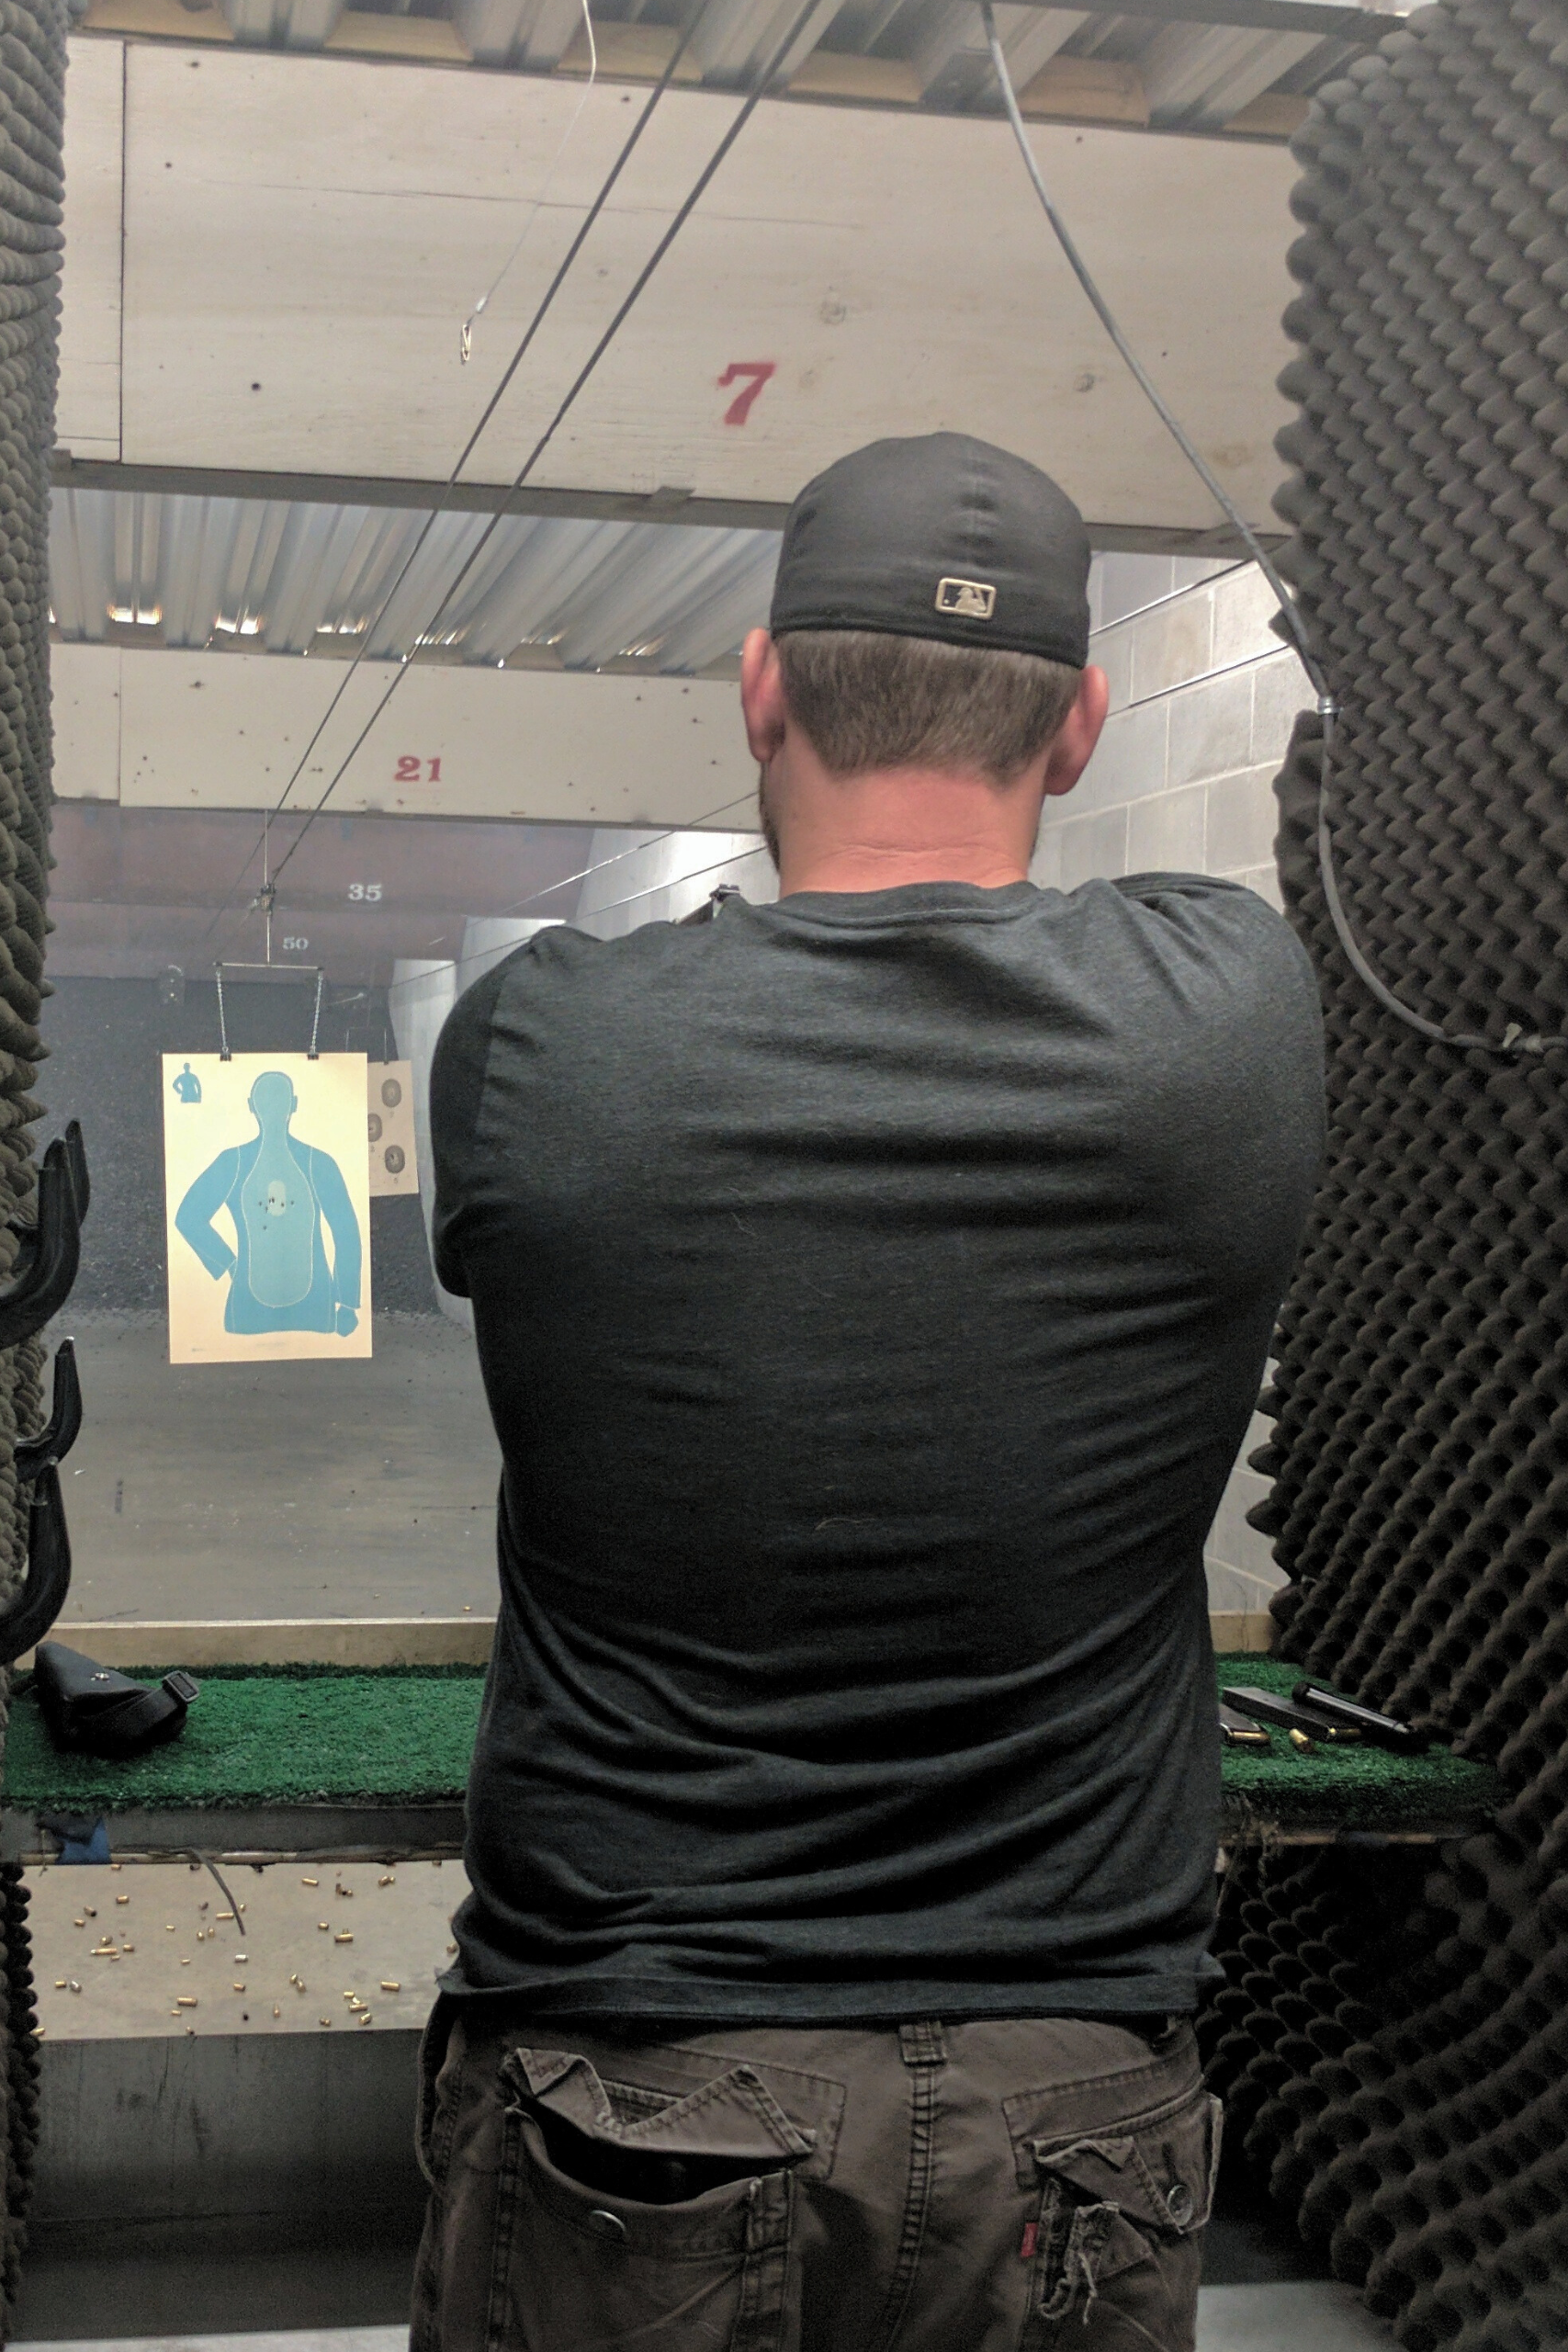 A man practicing in the indoor gun range.